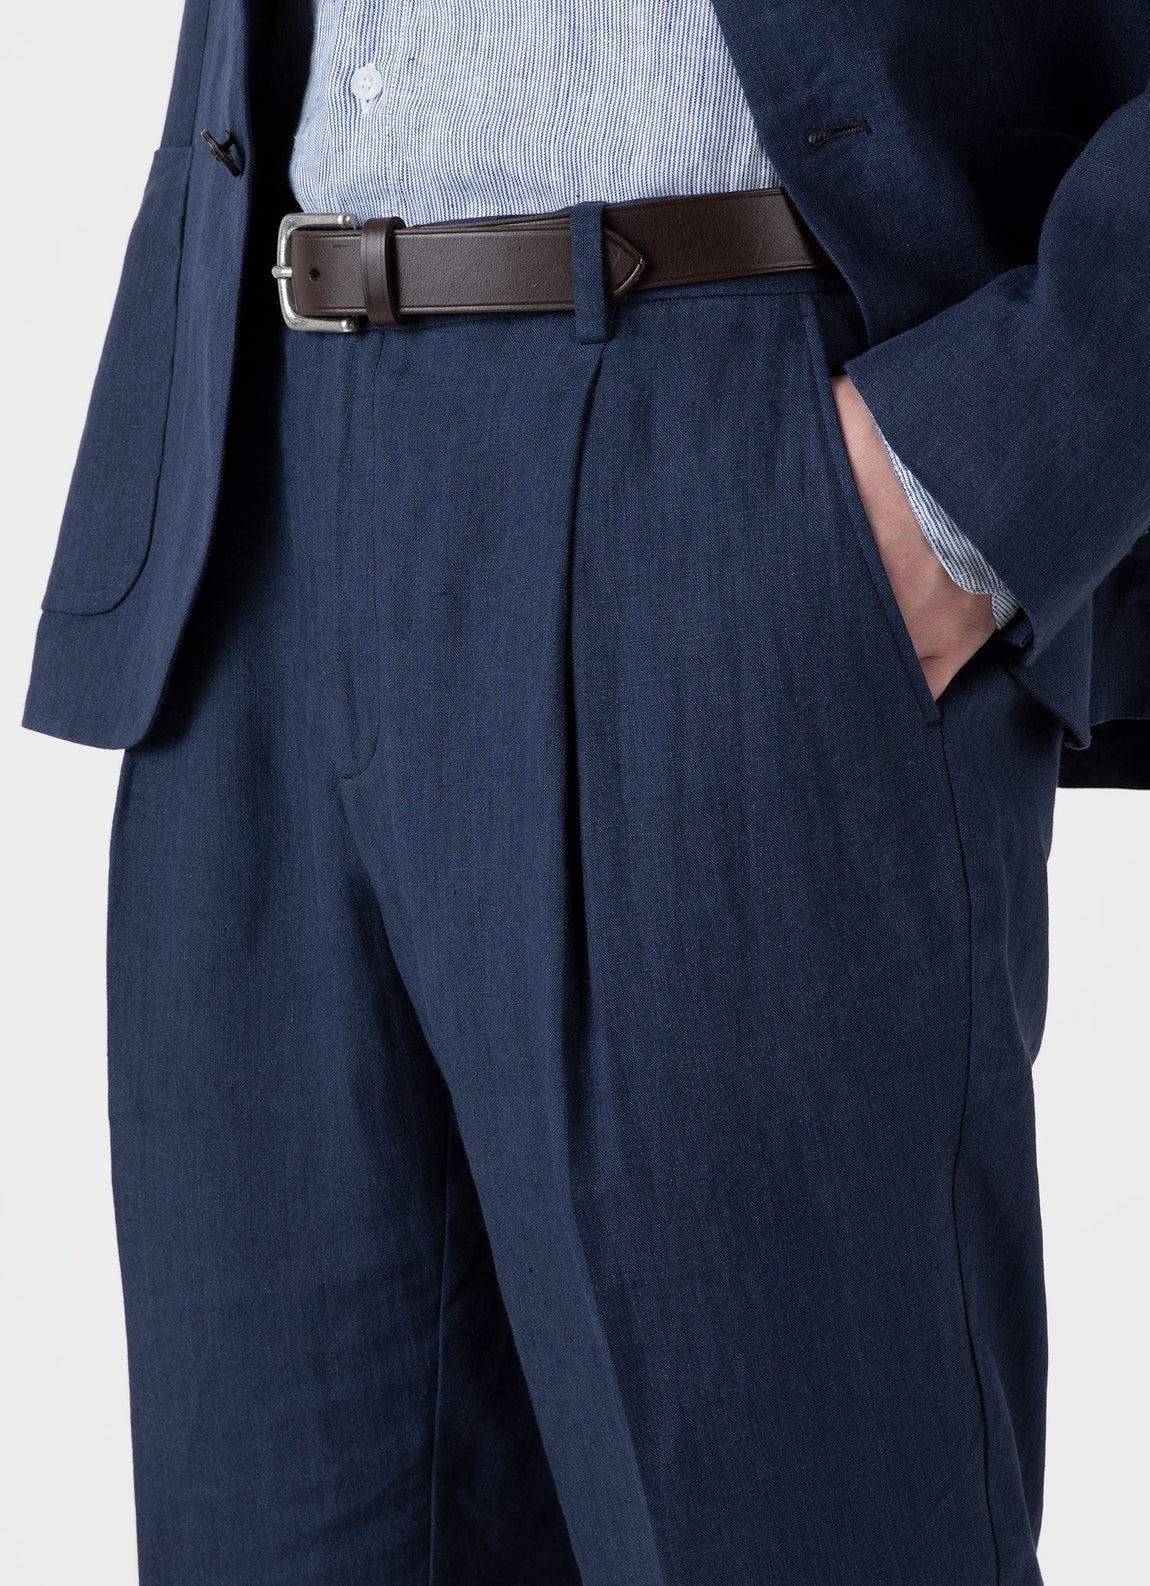 Men's Linen Two-Piece Suit in Navy